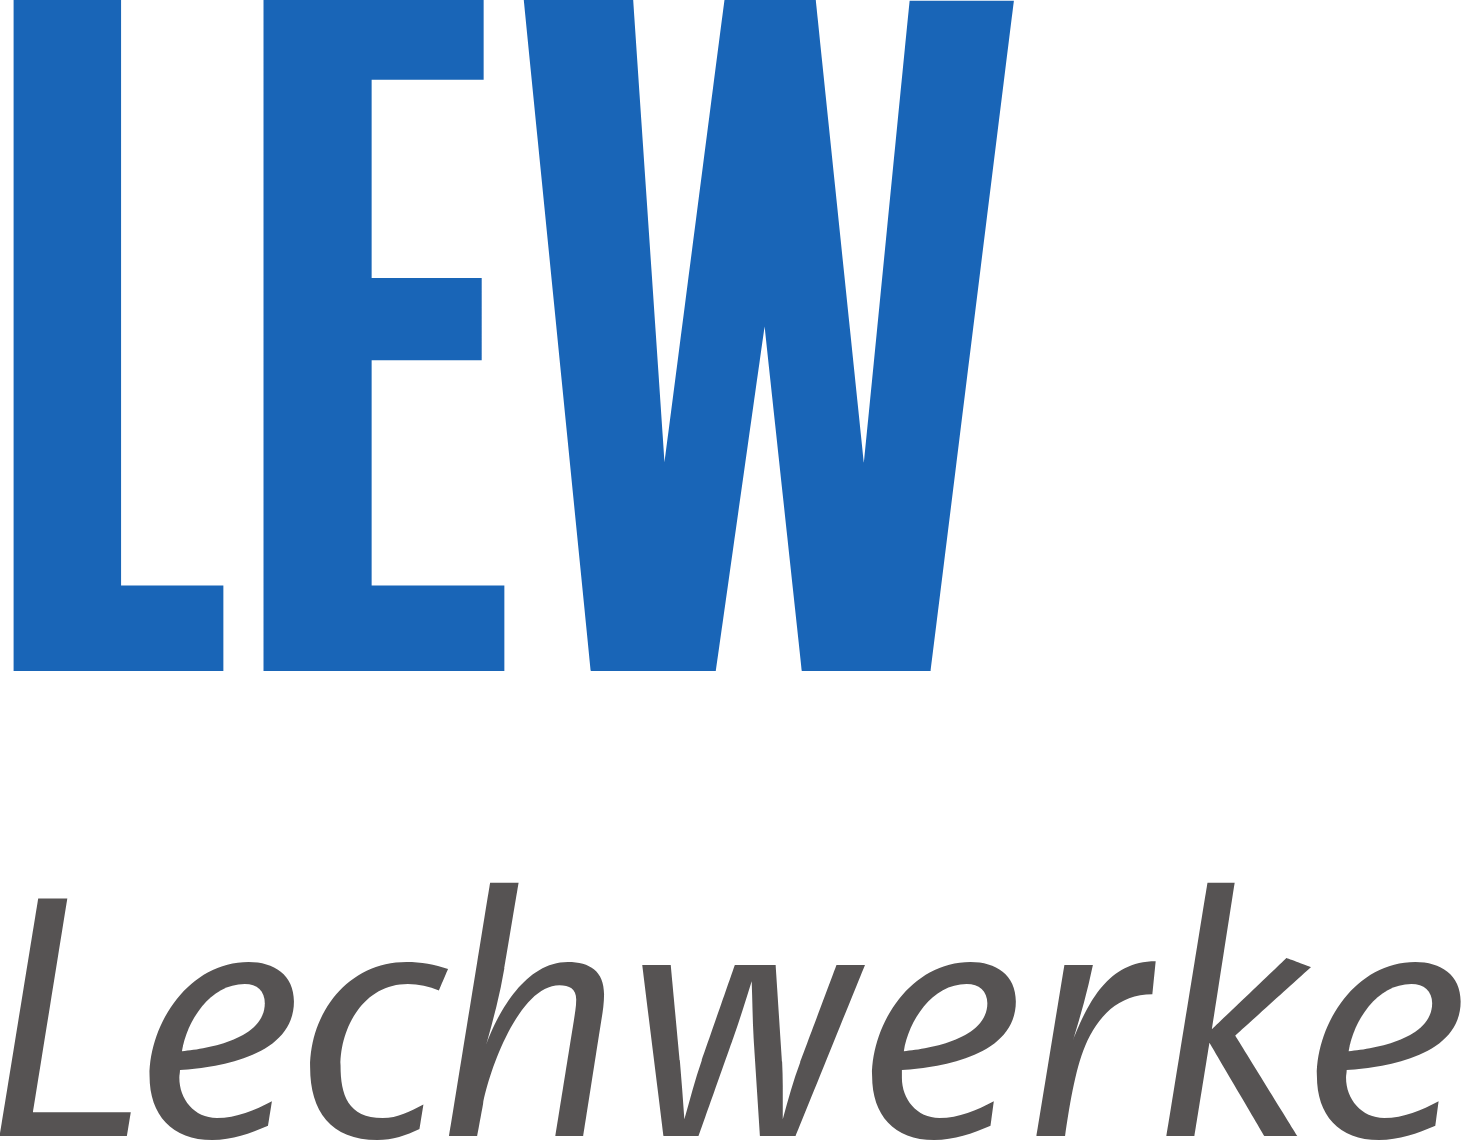 Lechwerke logo large (transparent PNG)